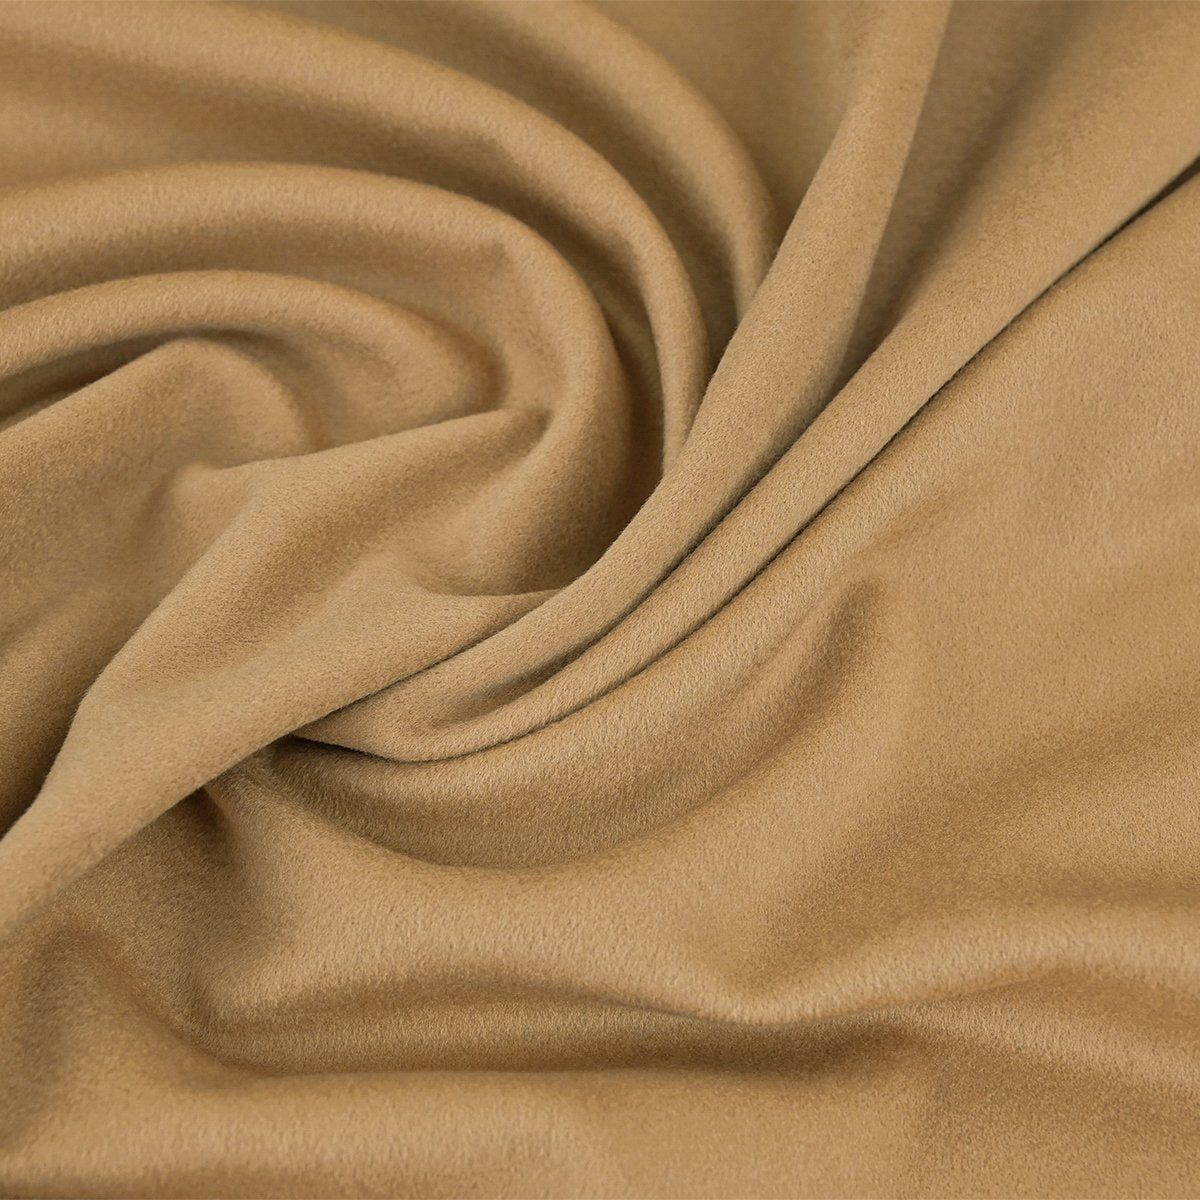 Camel Coating Fabric 4070